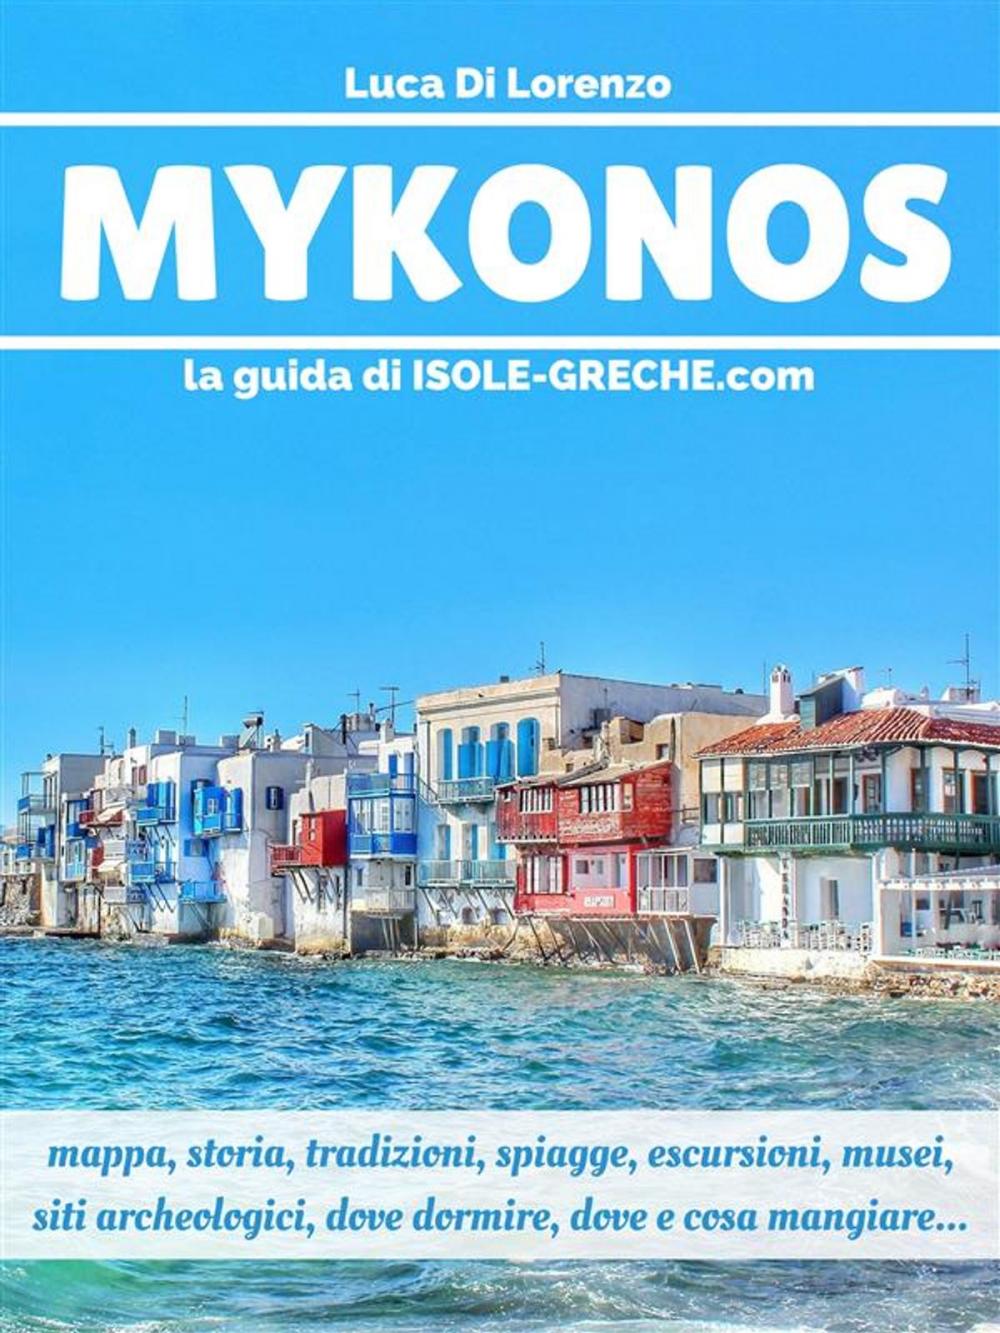 Big bigCover of Mykonos - La guida di isole-greche.com